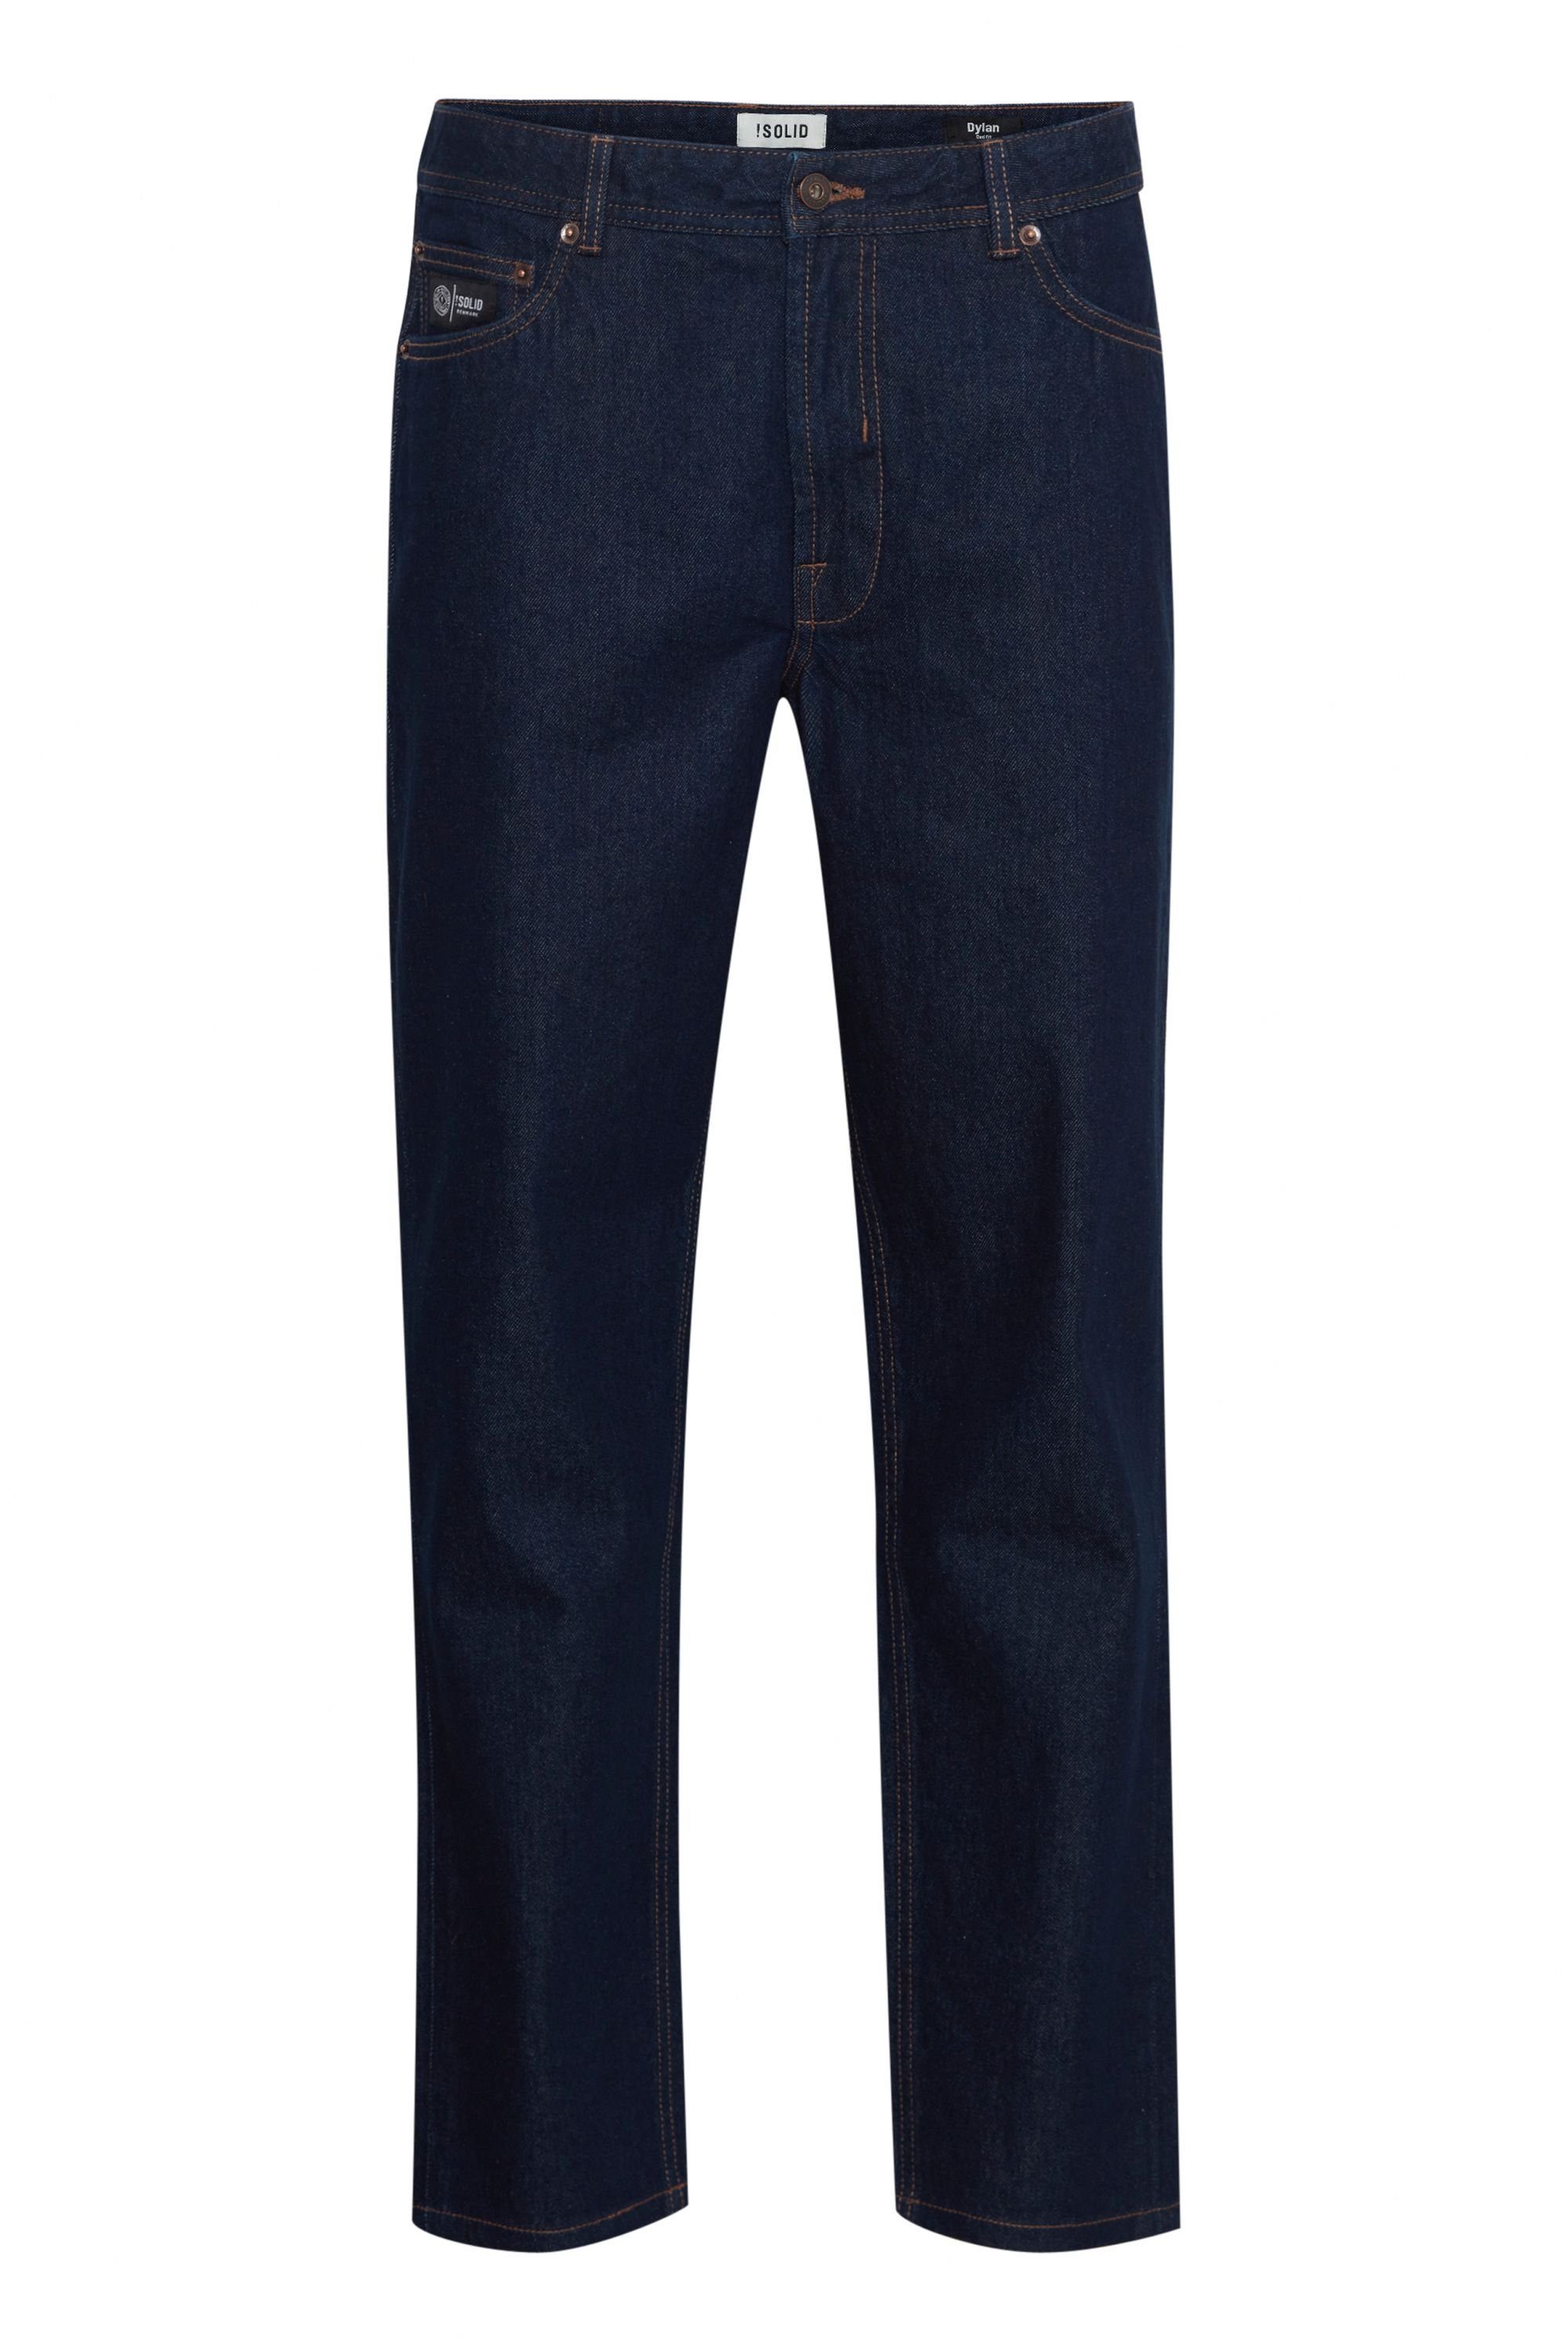 Blue 5-Pocket-Jeans !Solid Dark Denim (700031) SDHoff